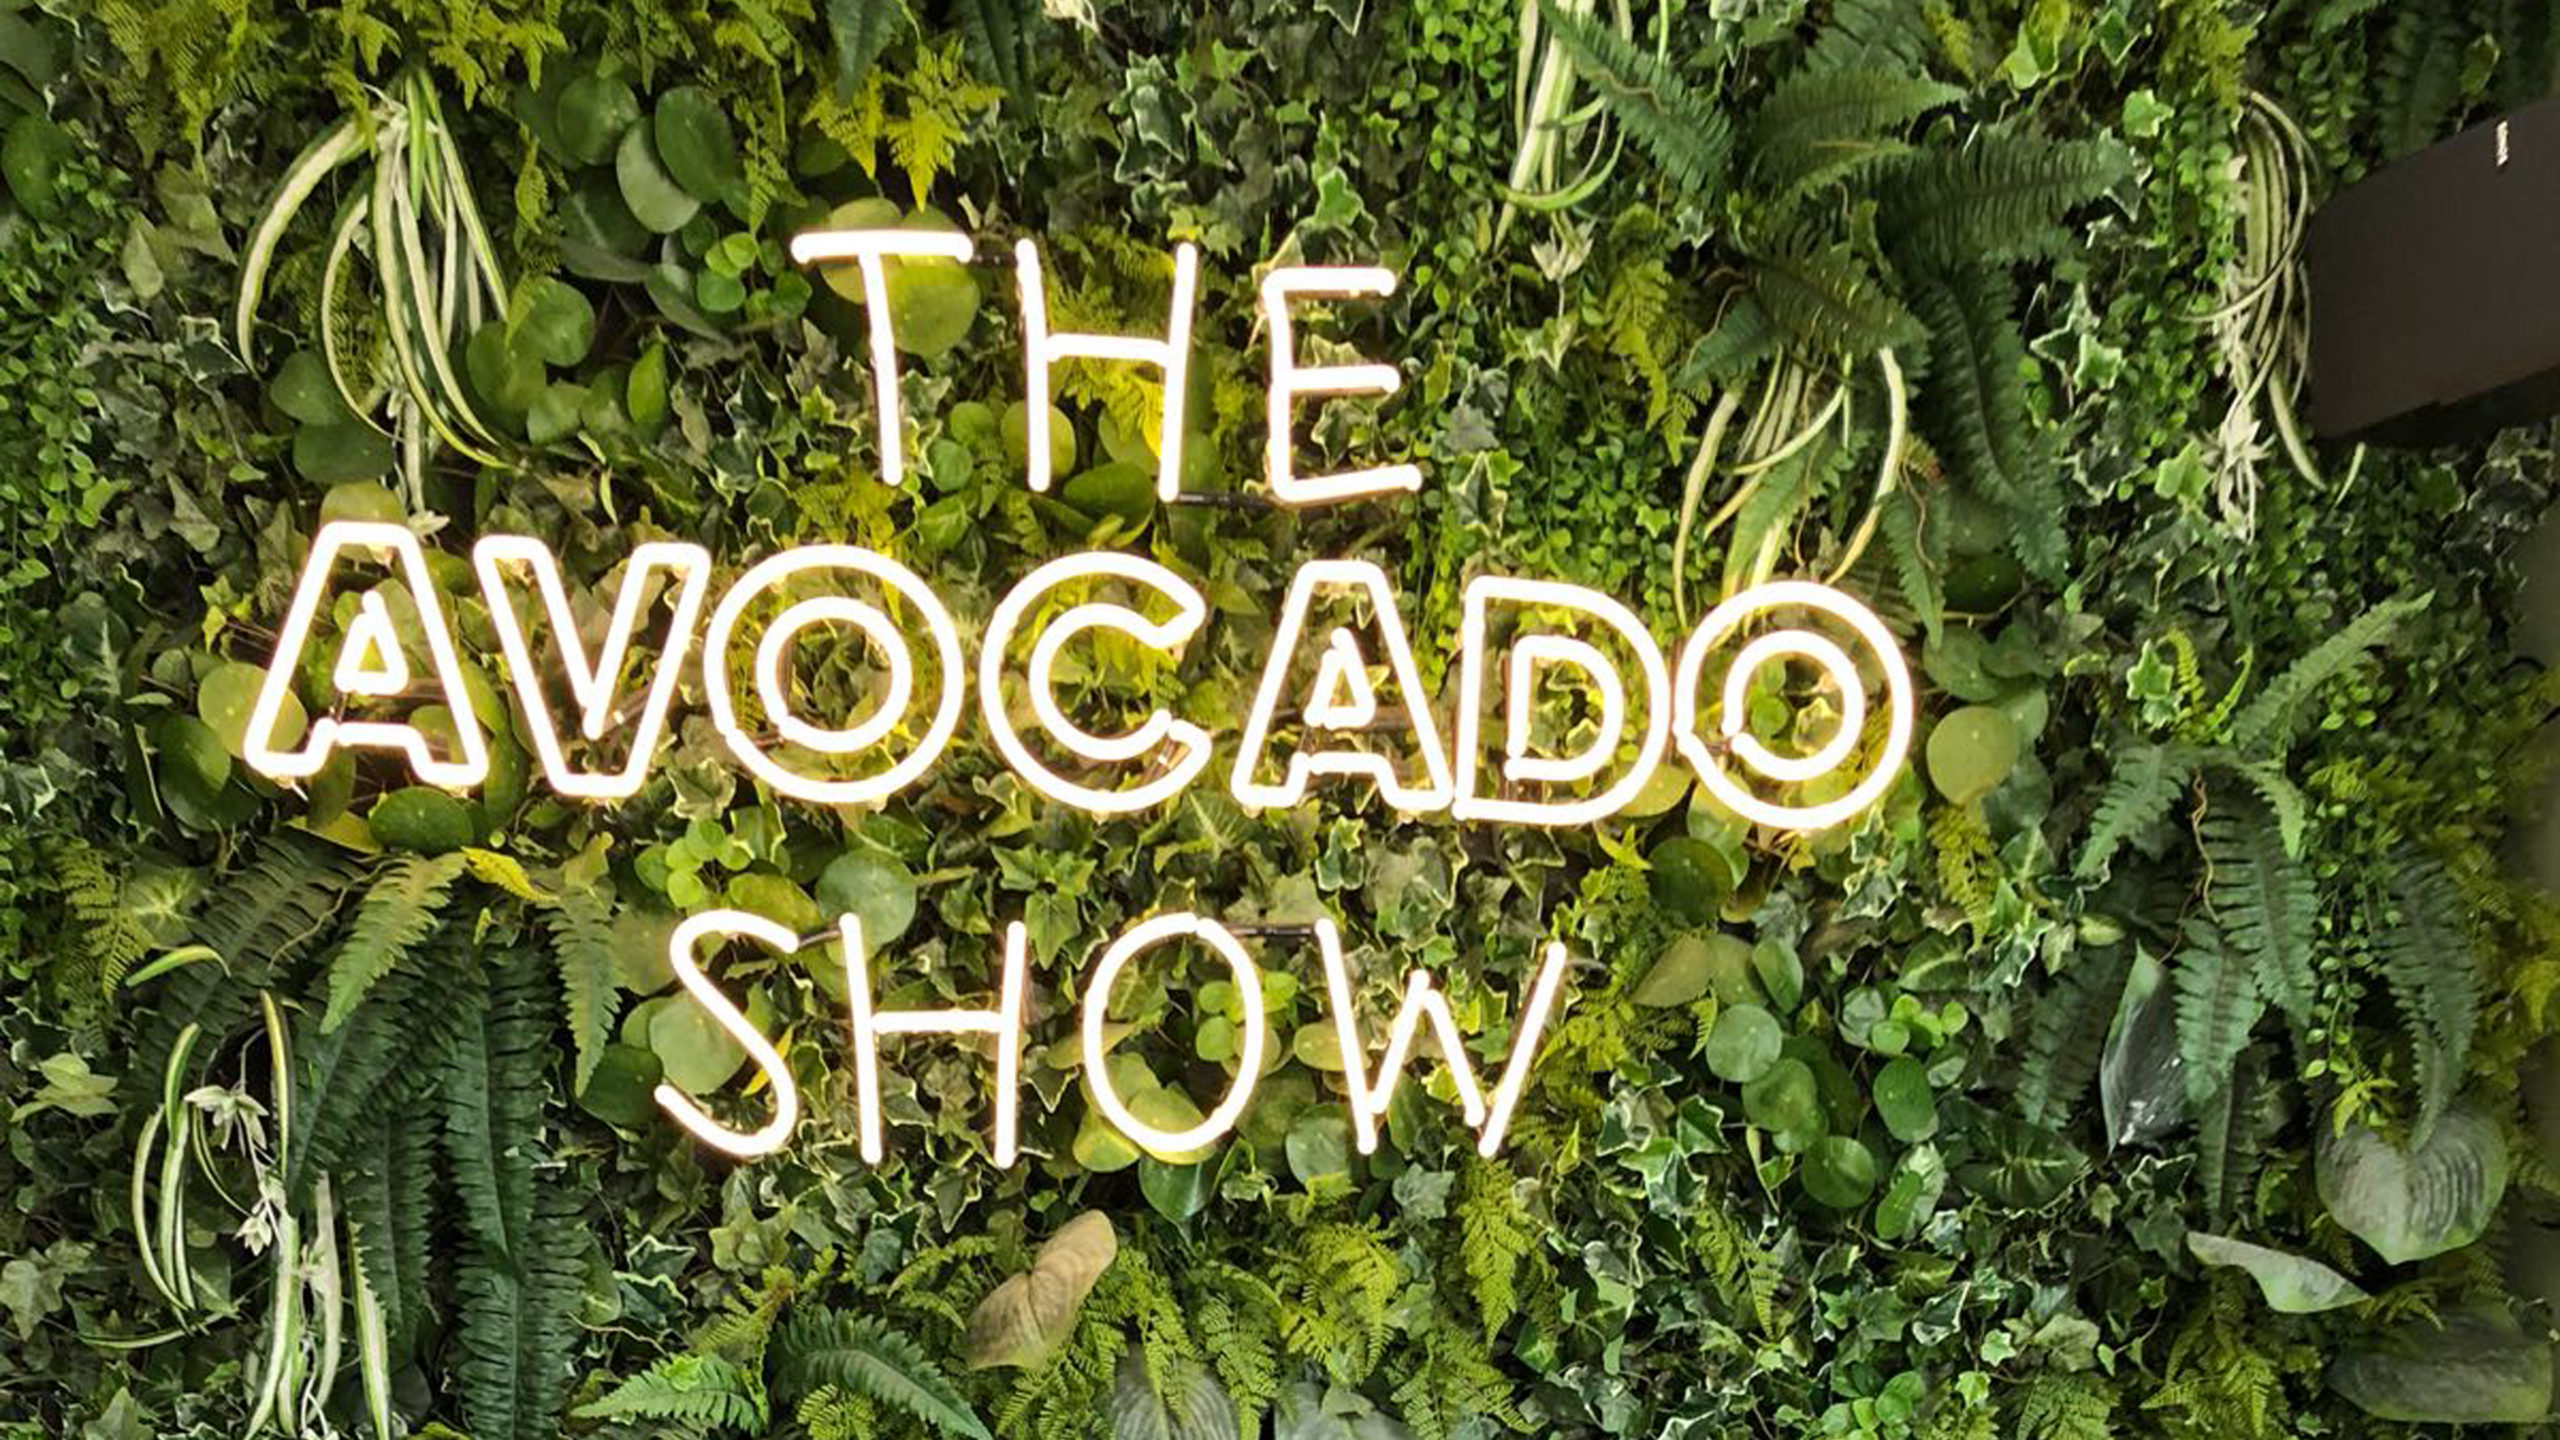 The avocado show